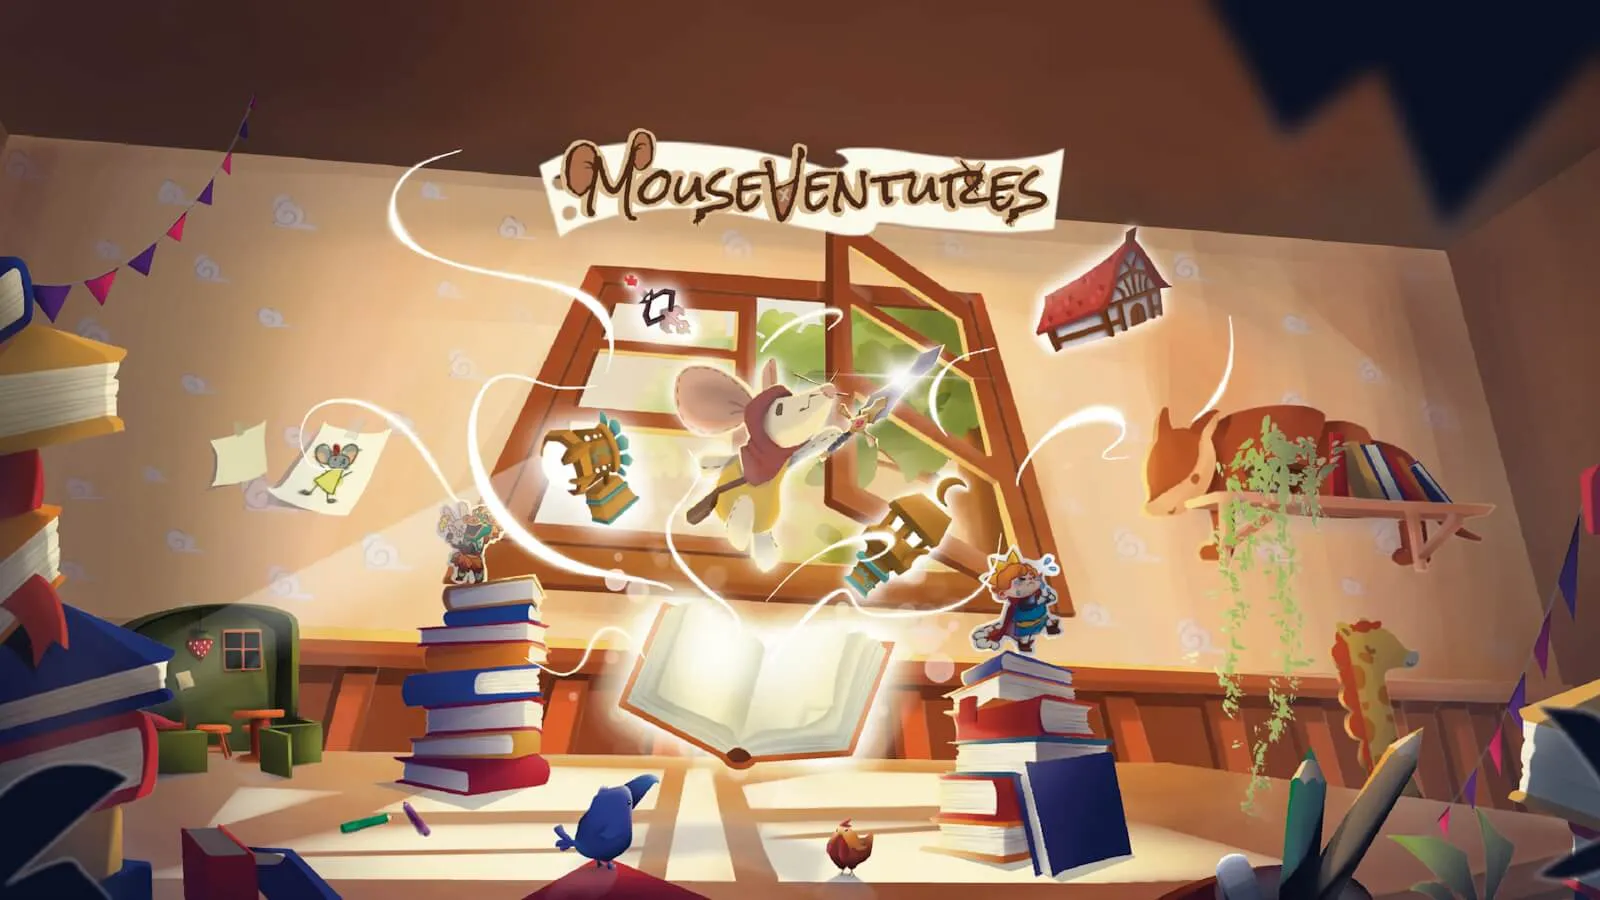 Una escena mágica de un ratón con una espada que vuela desde un libro abierto, rodeado de otros objetos.